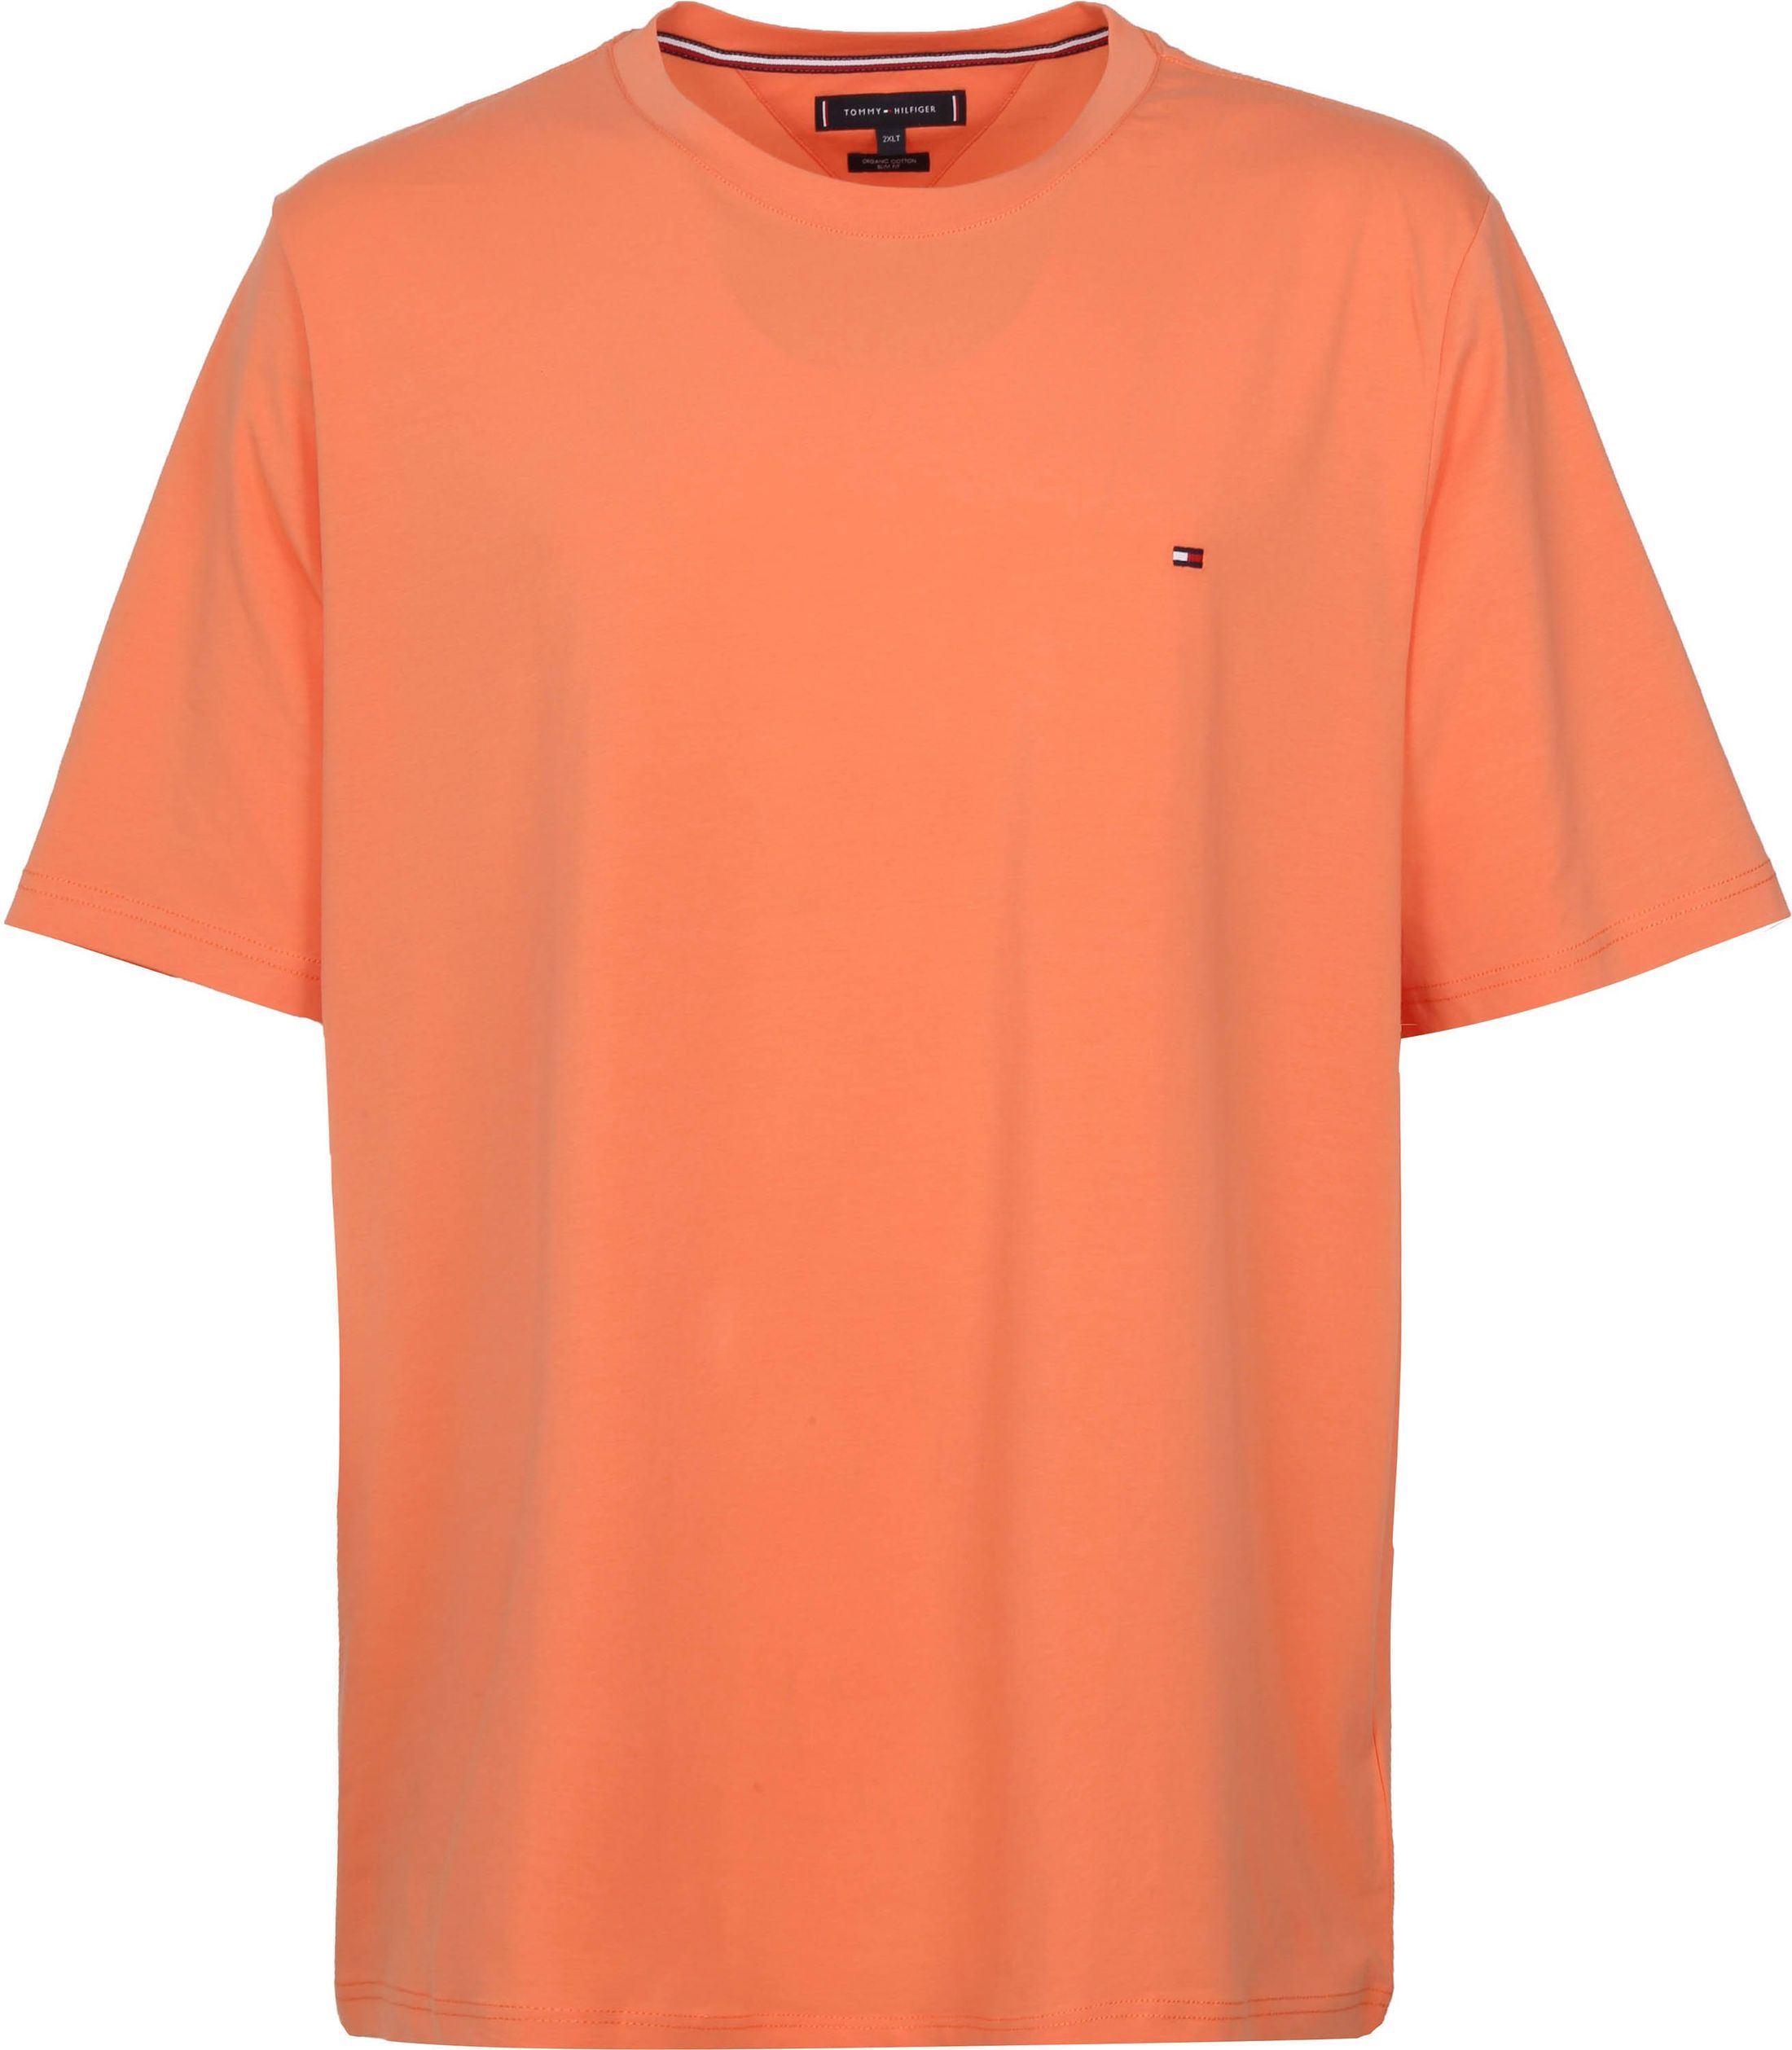 Tommy Hilfiger Big and Tall T Shirt Stretch Orange size XXL